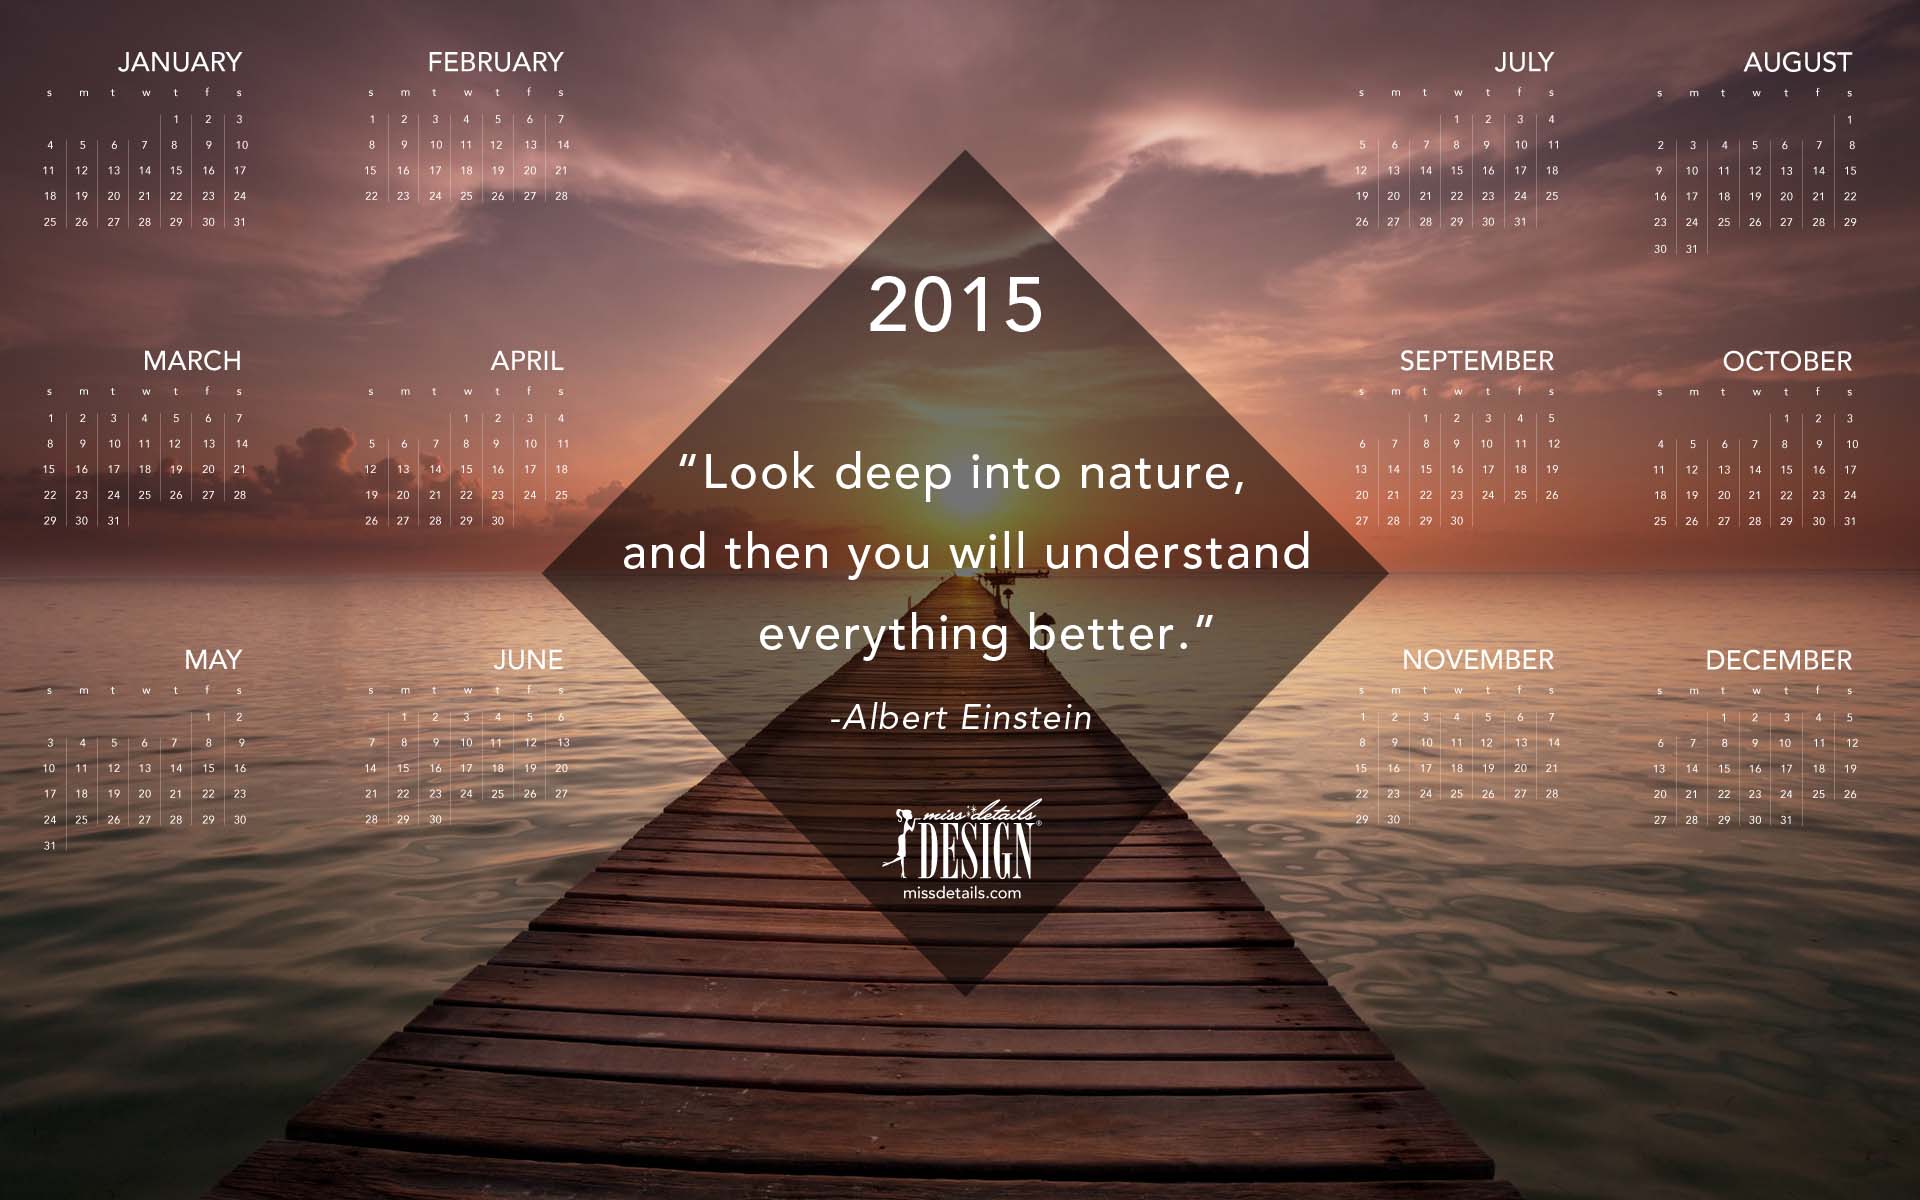 Free inspiring 2015 desktop calendar from missdetails.com - Boardwalk Sunset